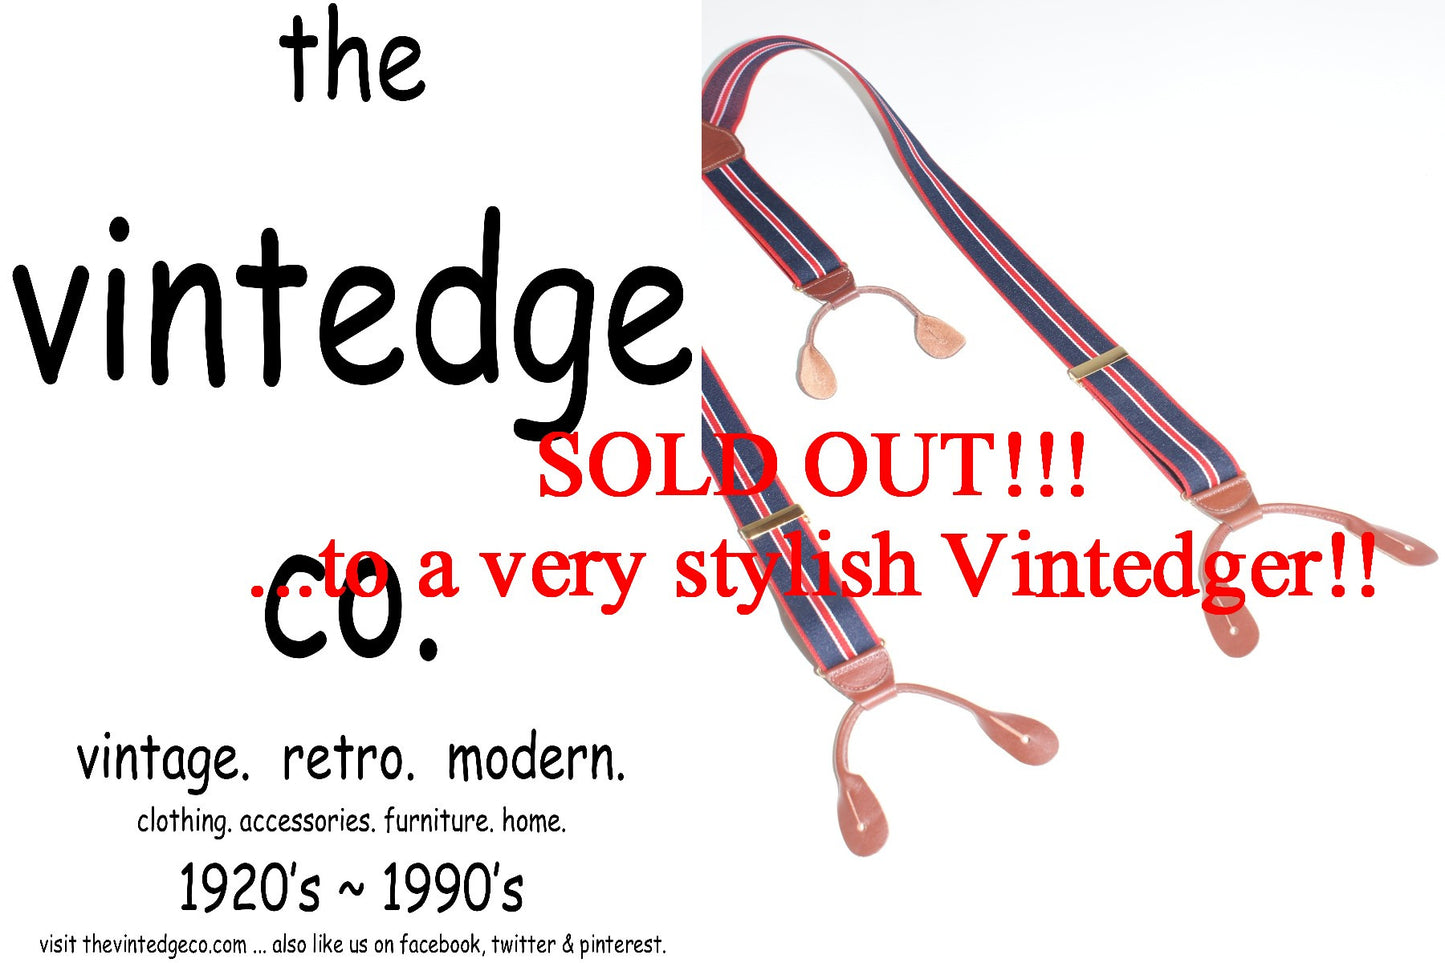 SOLD - Vintage Mens Suspenders The Vintedge Co.